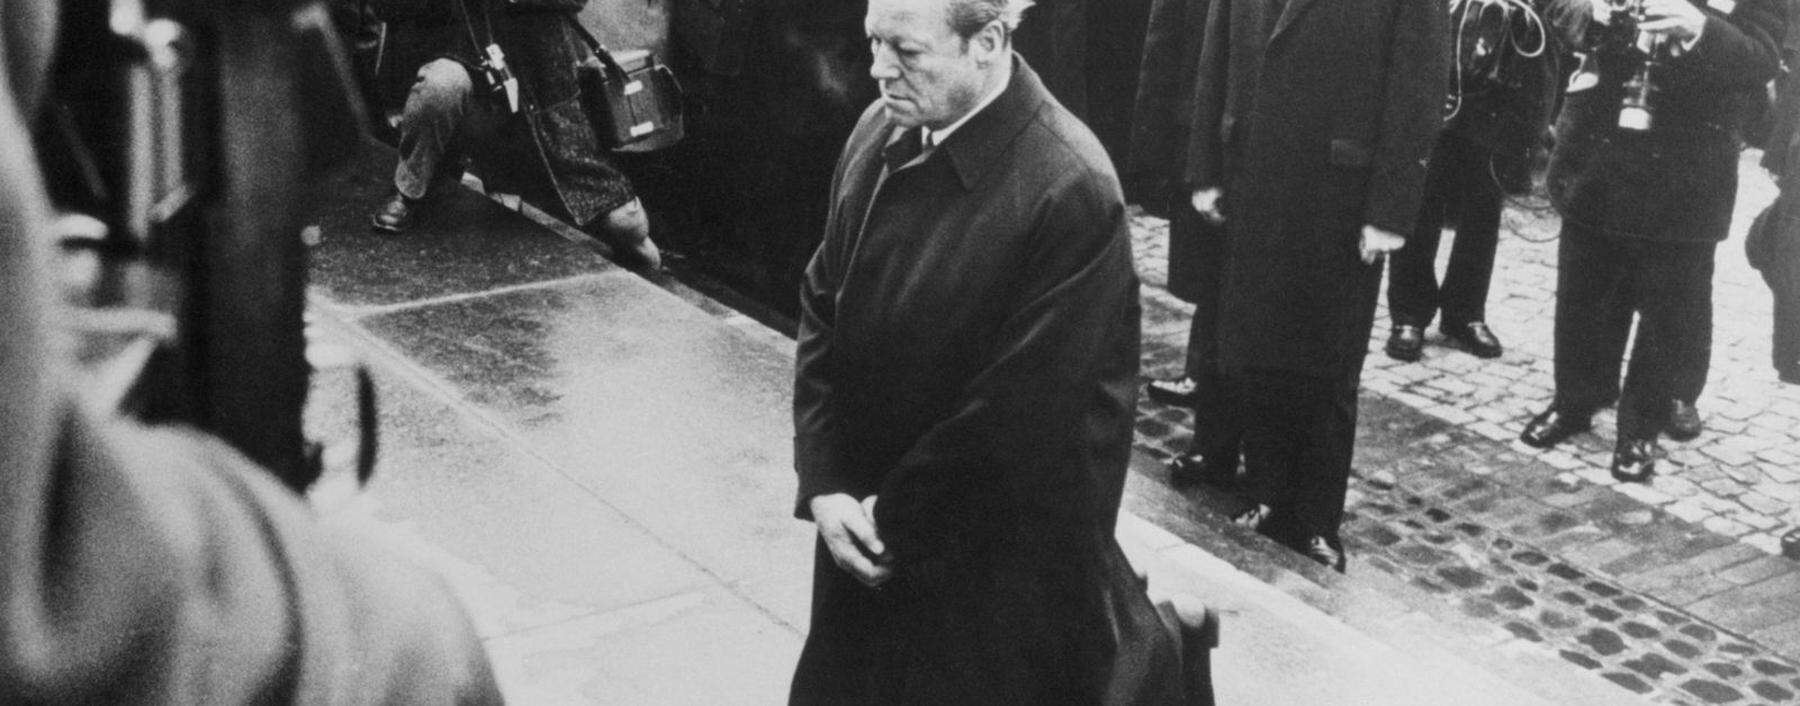 Der Kniefall Willy Brandts vor dem Denkmal für die Opfer des Warschauer Gettos im Dezember 1970 ging als politische Demutsgeste in die Geschichte ein.